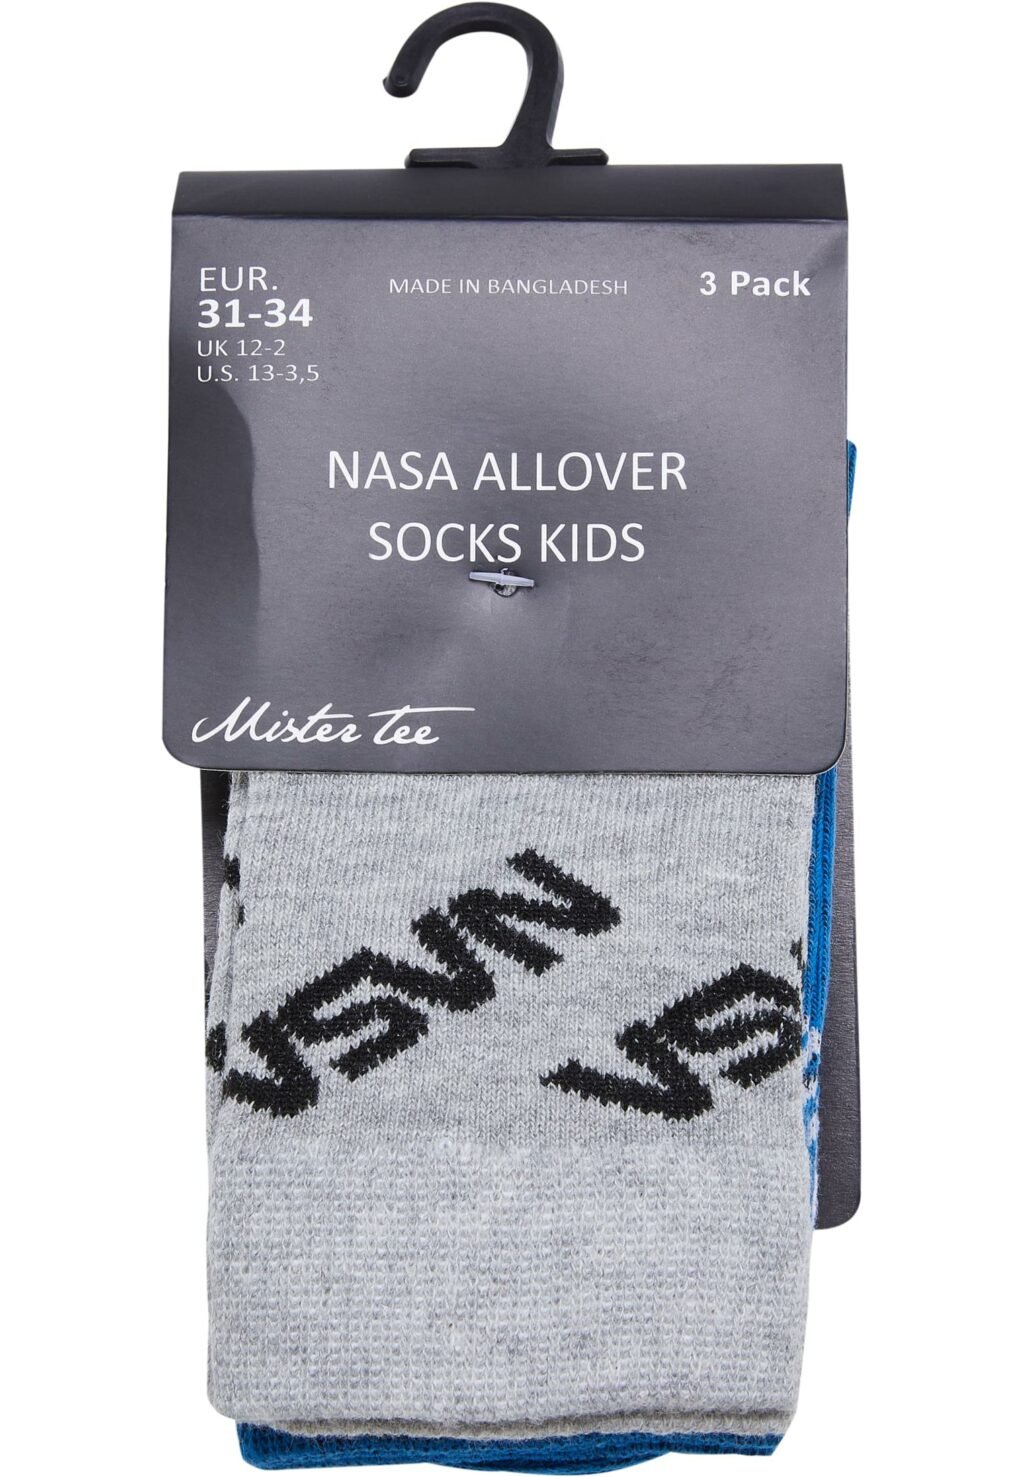 NASA Allover Socks Kids 3-Pack brightblue/grey/white MTK1207